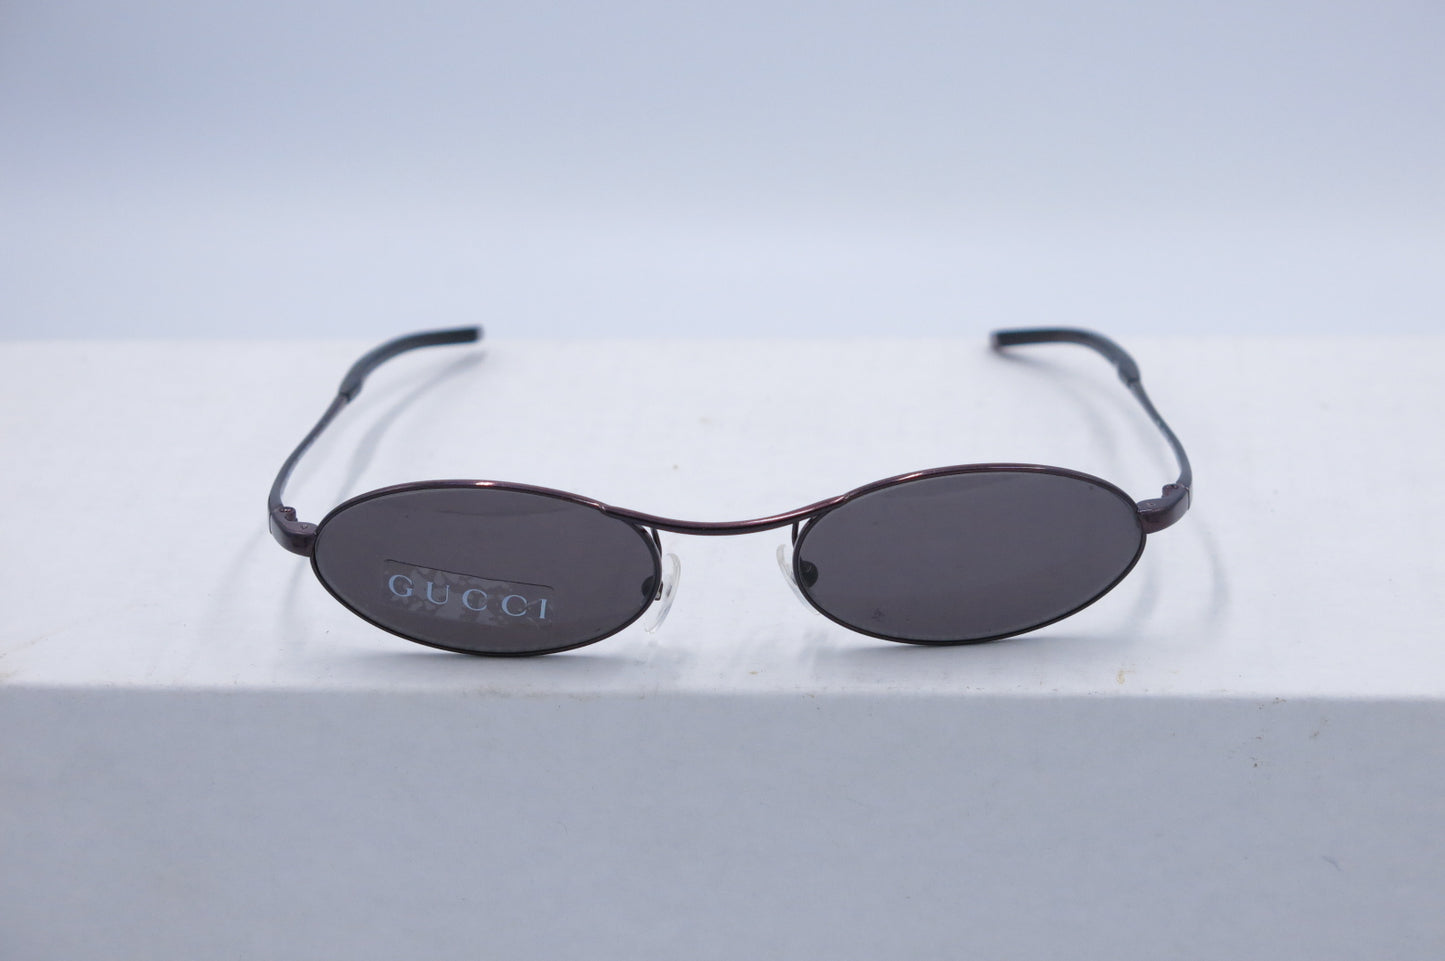 GUCCI Sunglasses GG 2671 maroon